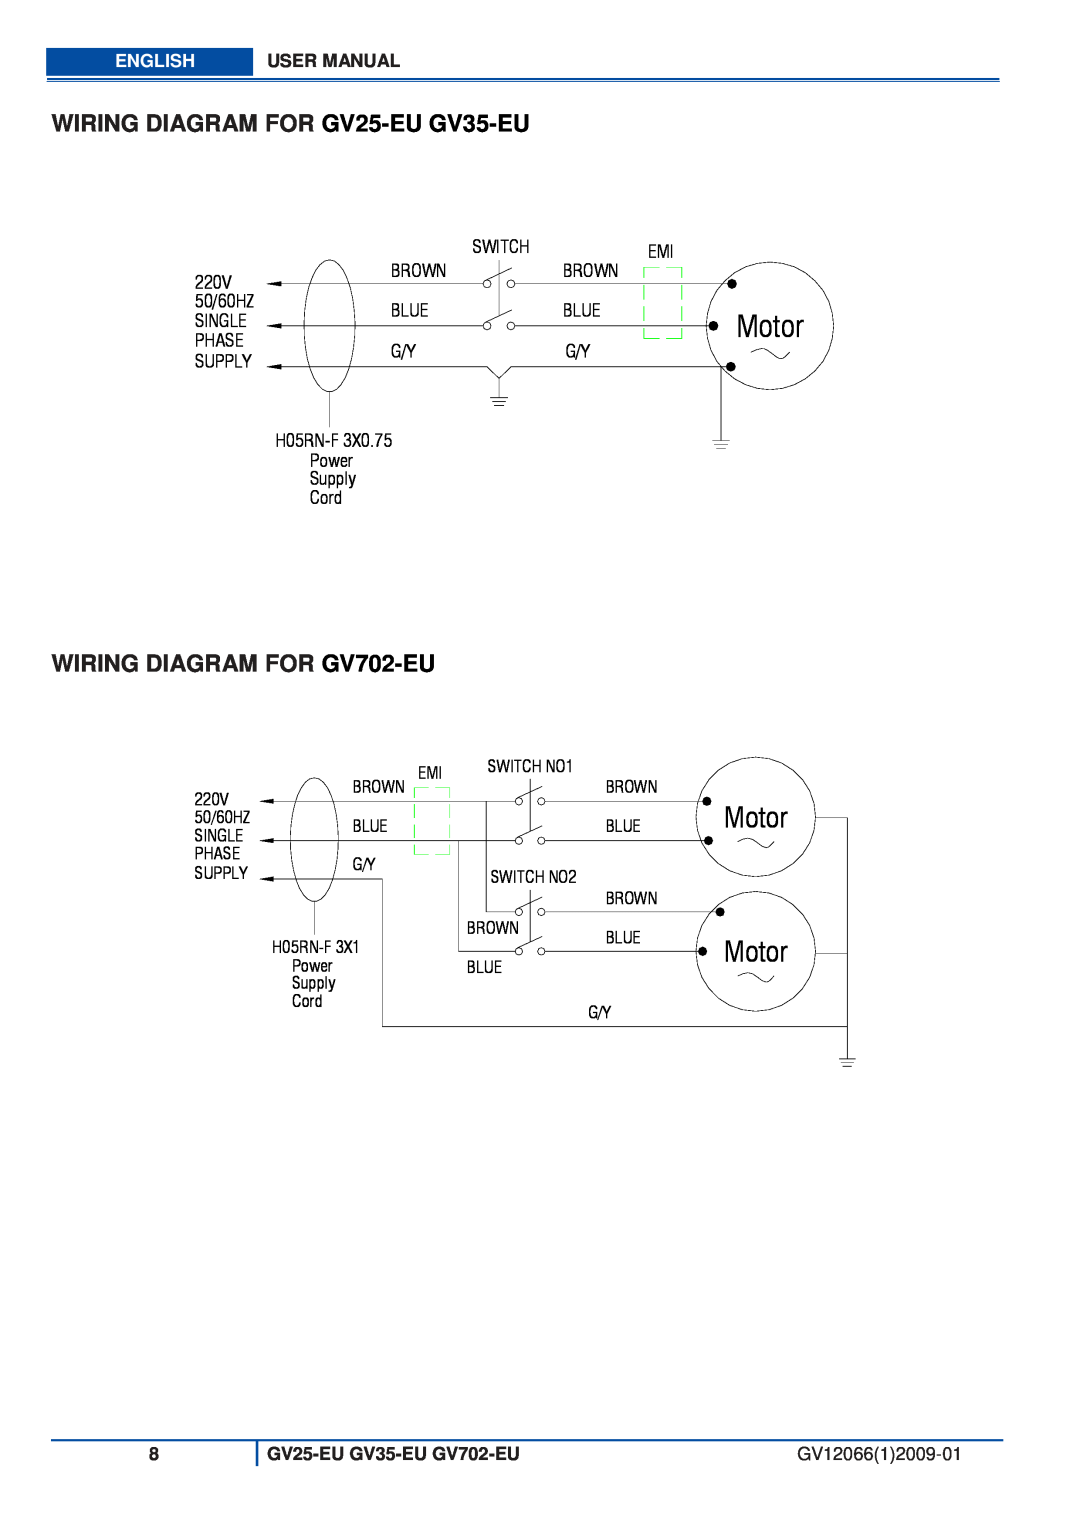 Viper WIRING DIAGRAM FOR GV25-EU GV35-EU, WIRING DIAGRAM FOR GV702-EU, Motor, English, GV25-EU GV35-EU GV702-EU 